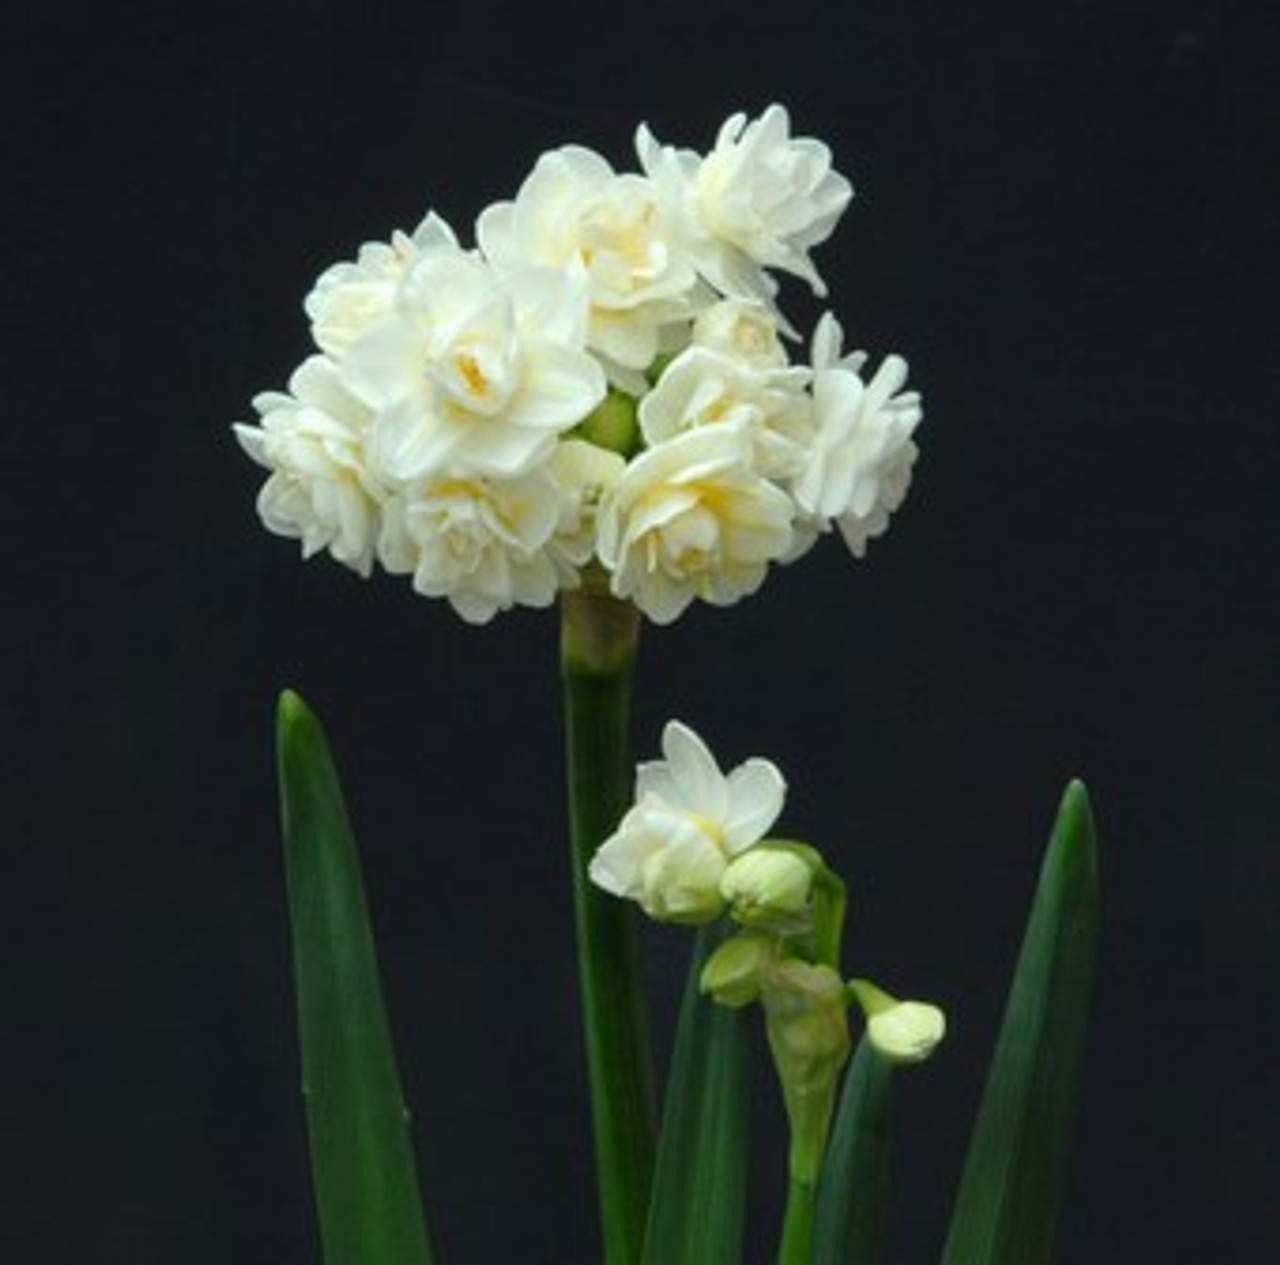 Narcissus tazetta 'Erlicheer' - Southern Perennial Daffodil Bulb